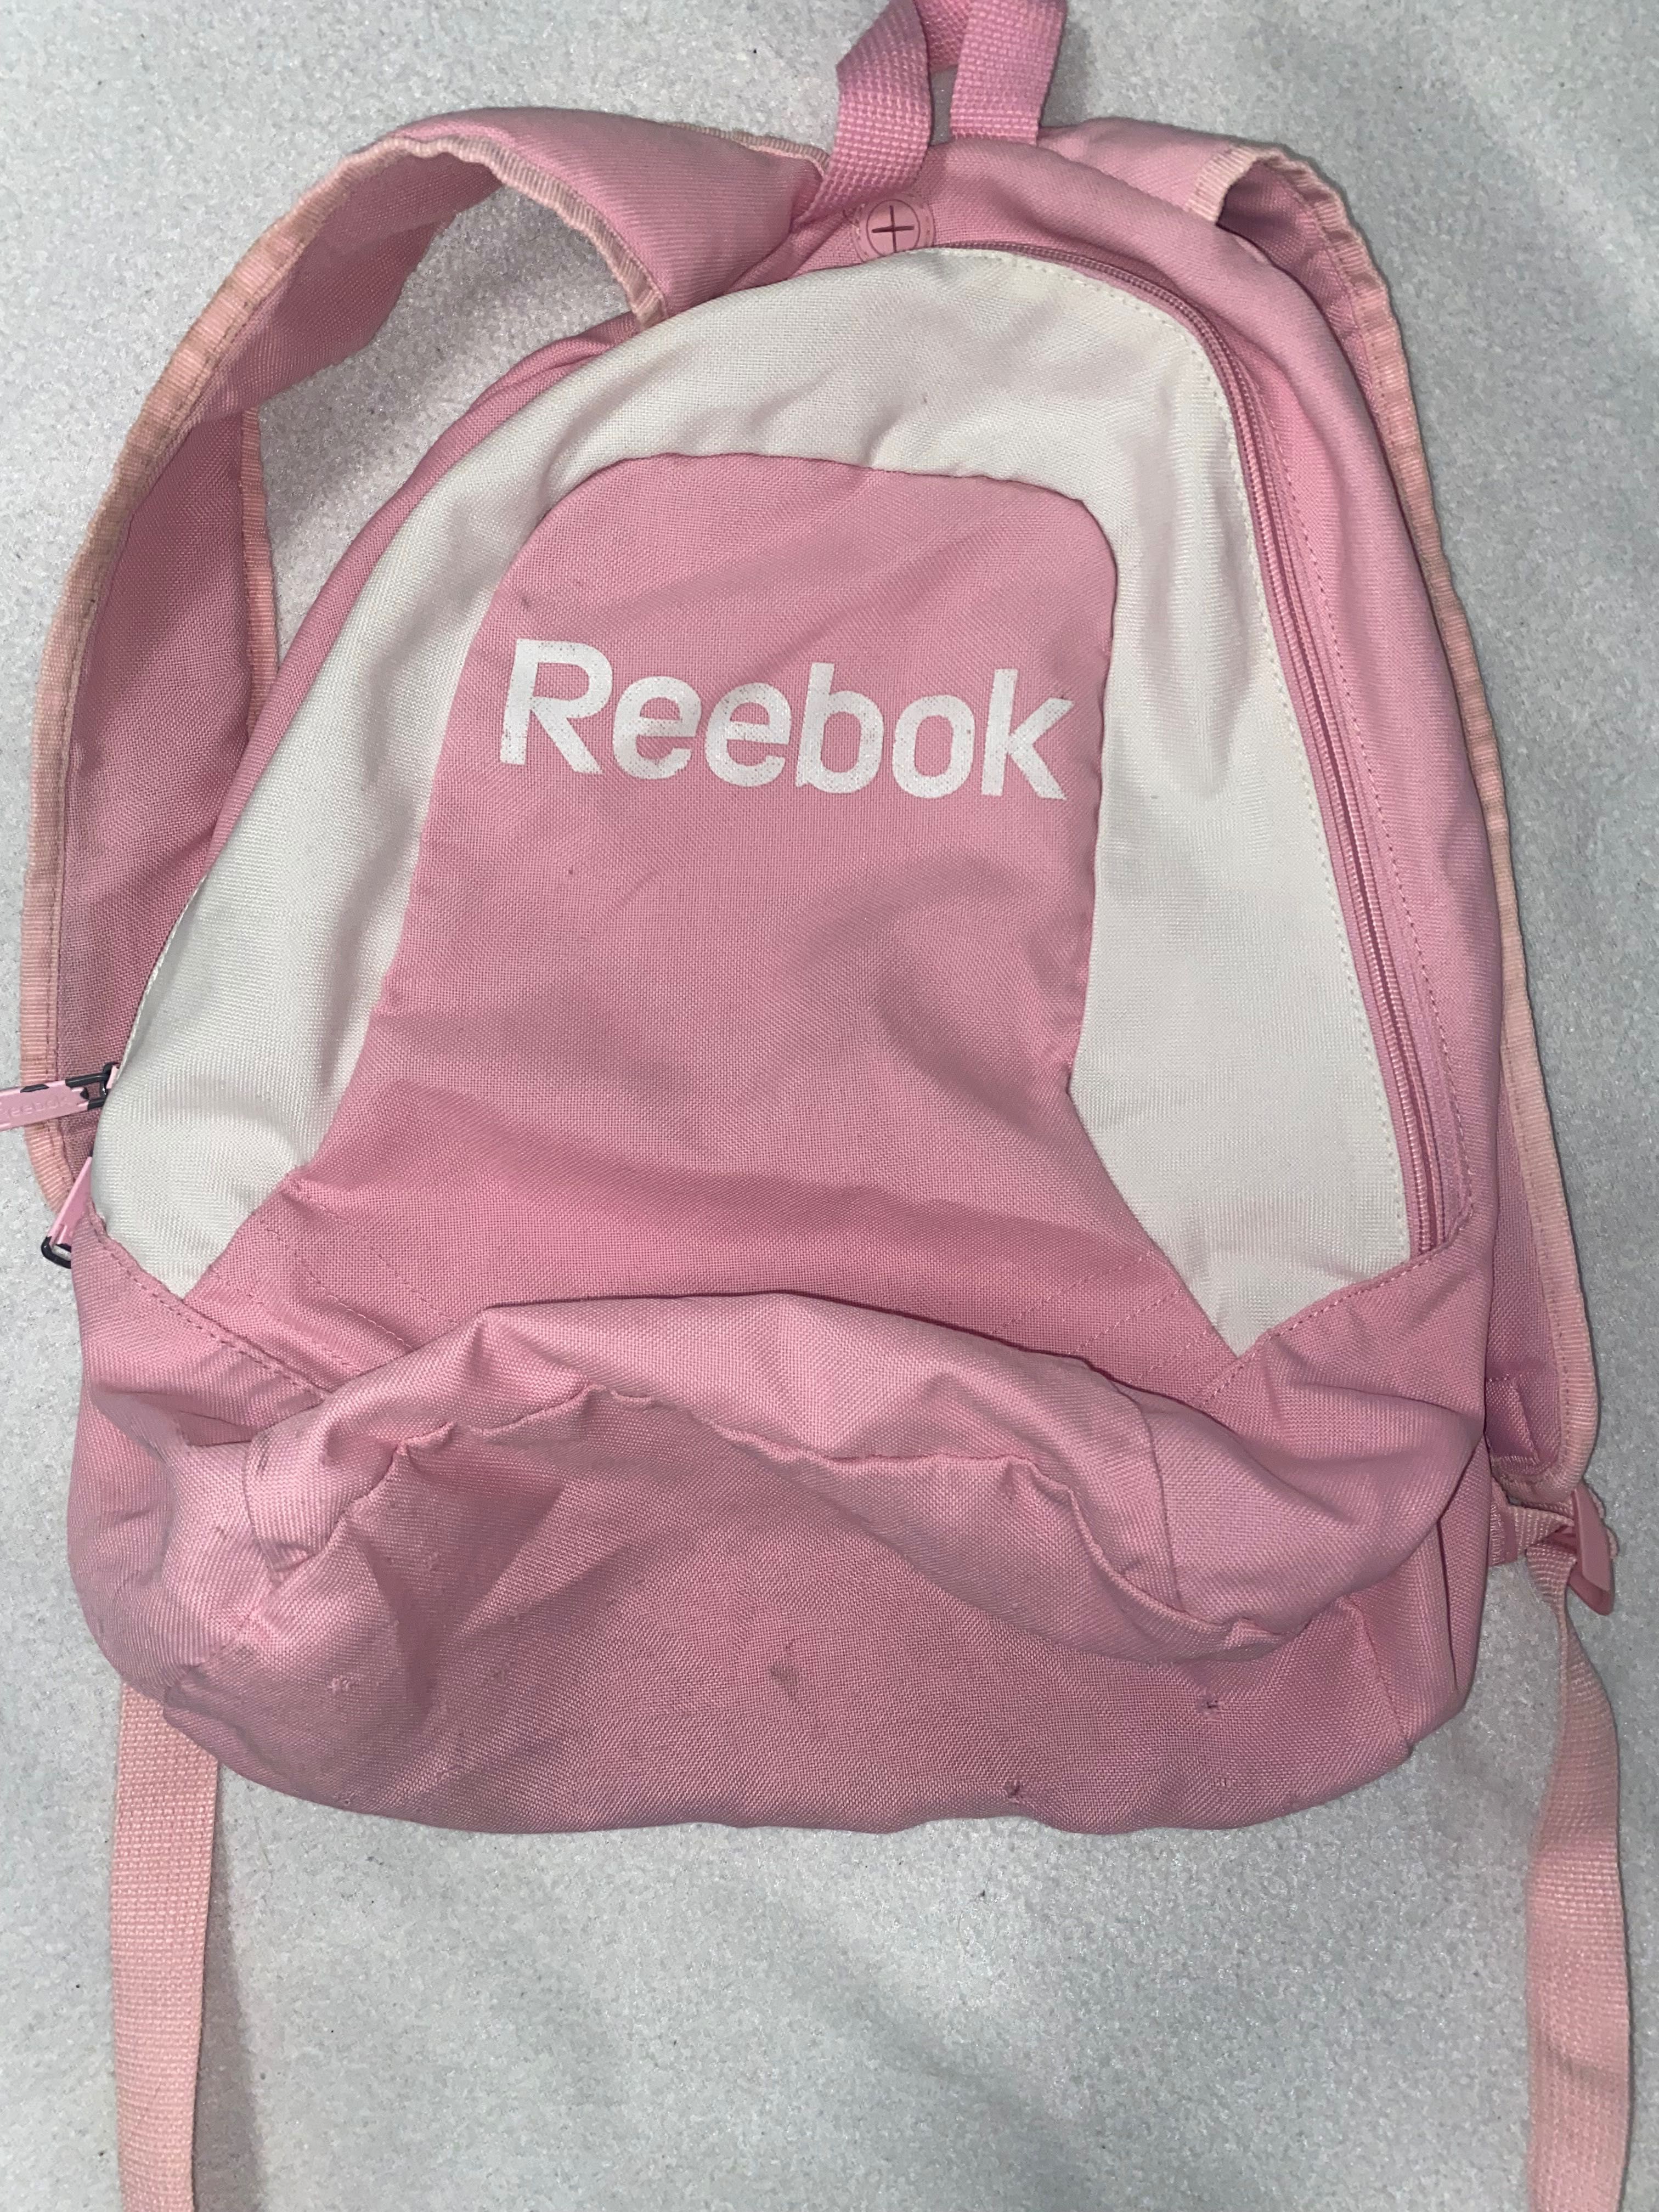 Plecak reebok różowy